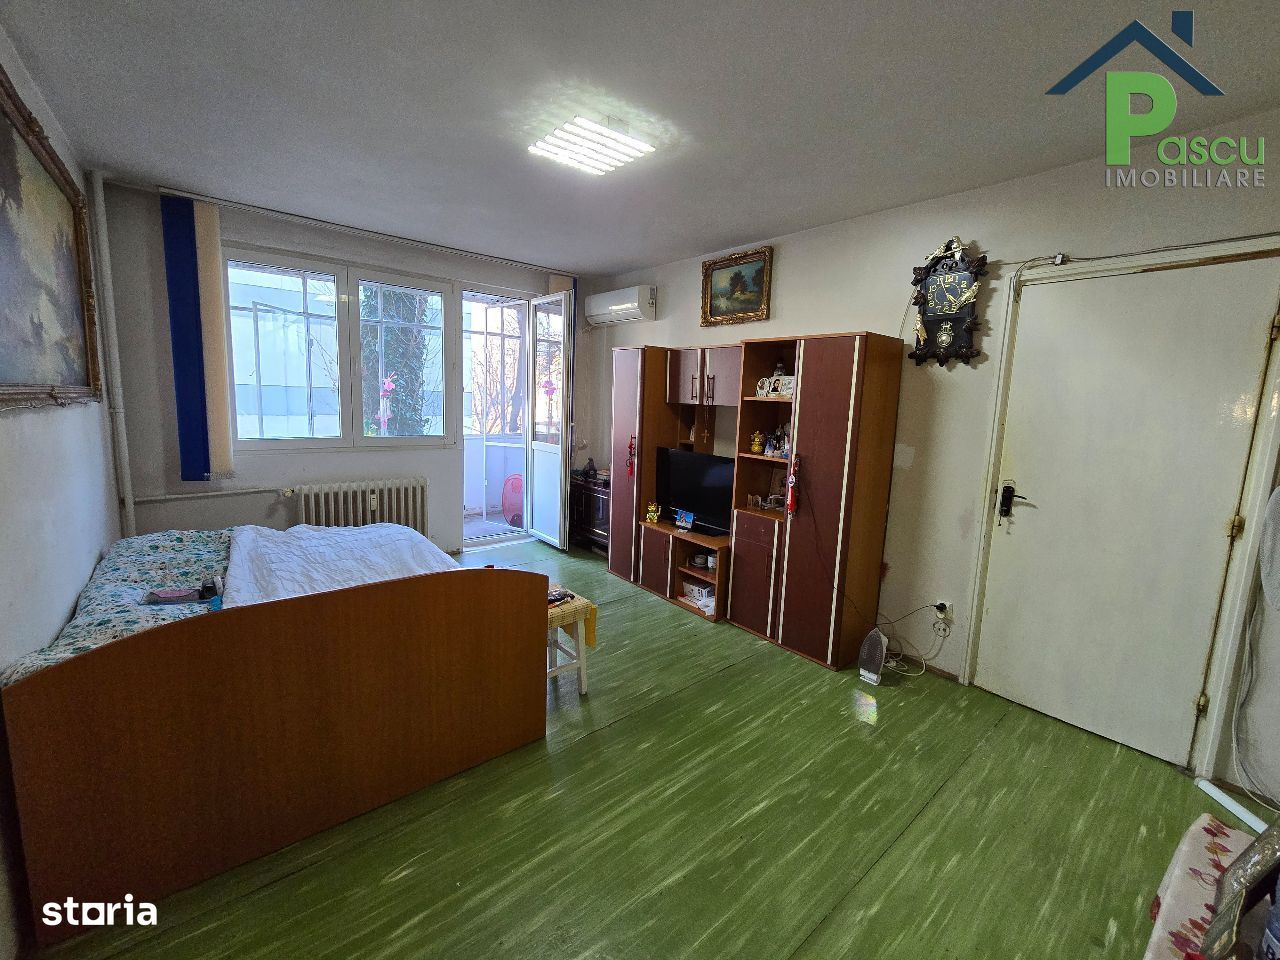 Apartament 2 camere Brancoveanu, Budimex, stradal, semi-decomandat